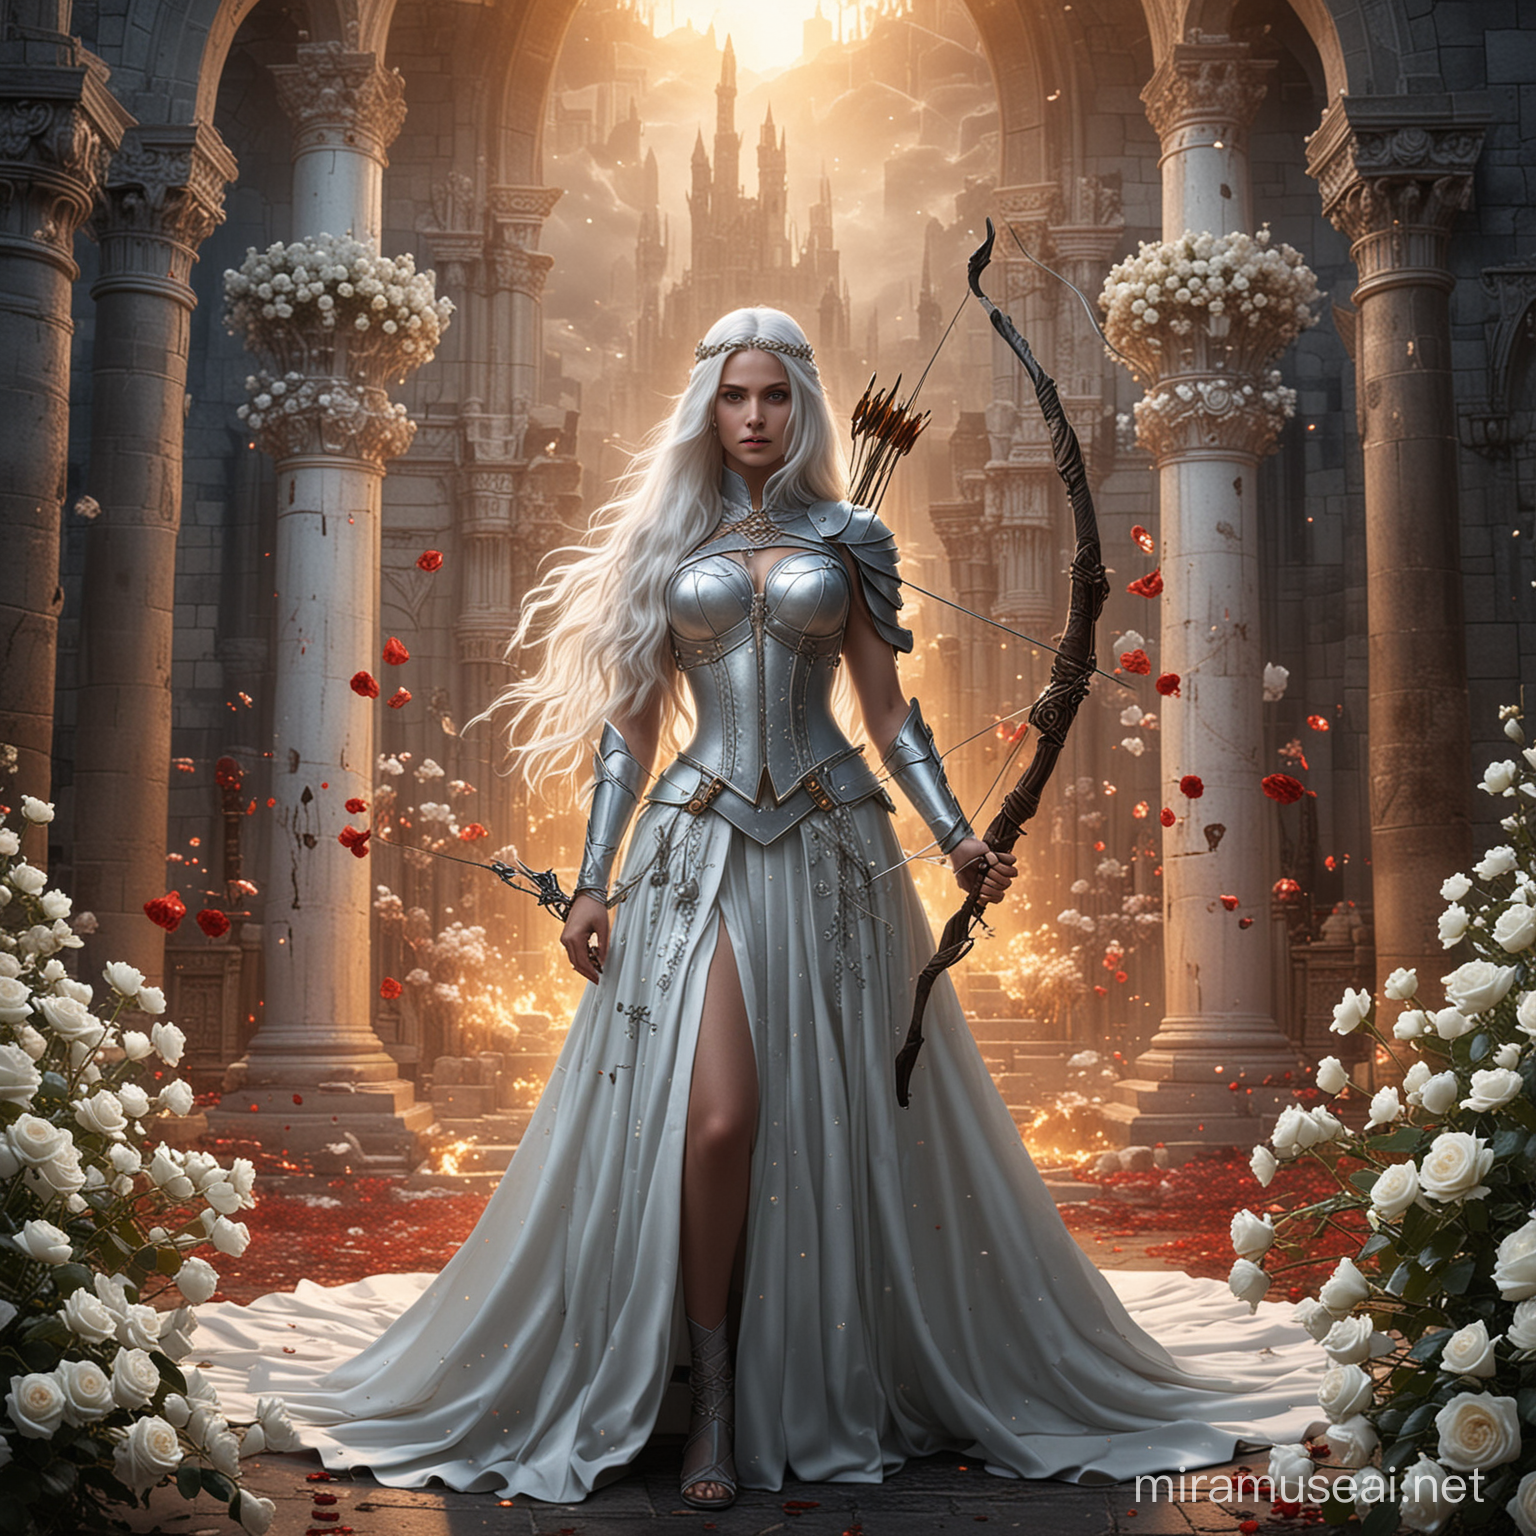 Majestic Empress Goddess in Fiery Battle Beside Throne and Castle